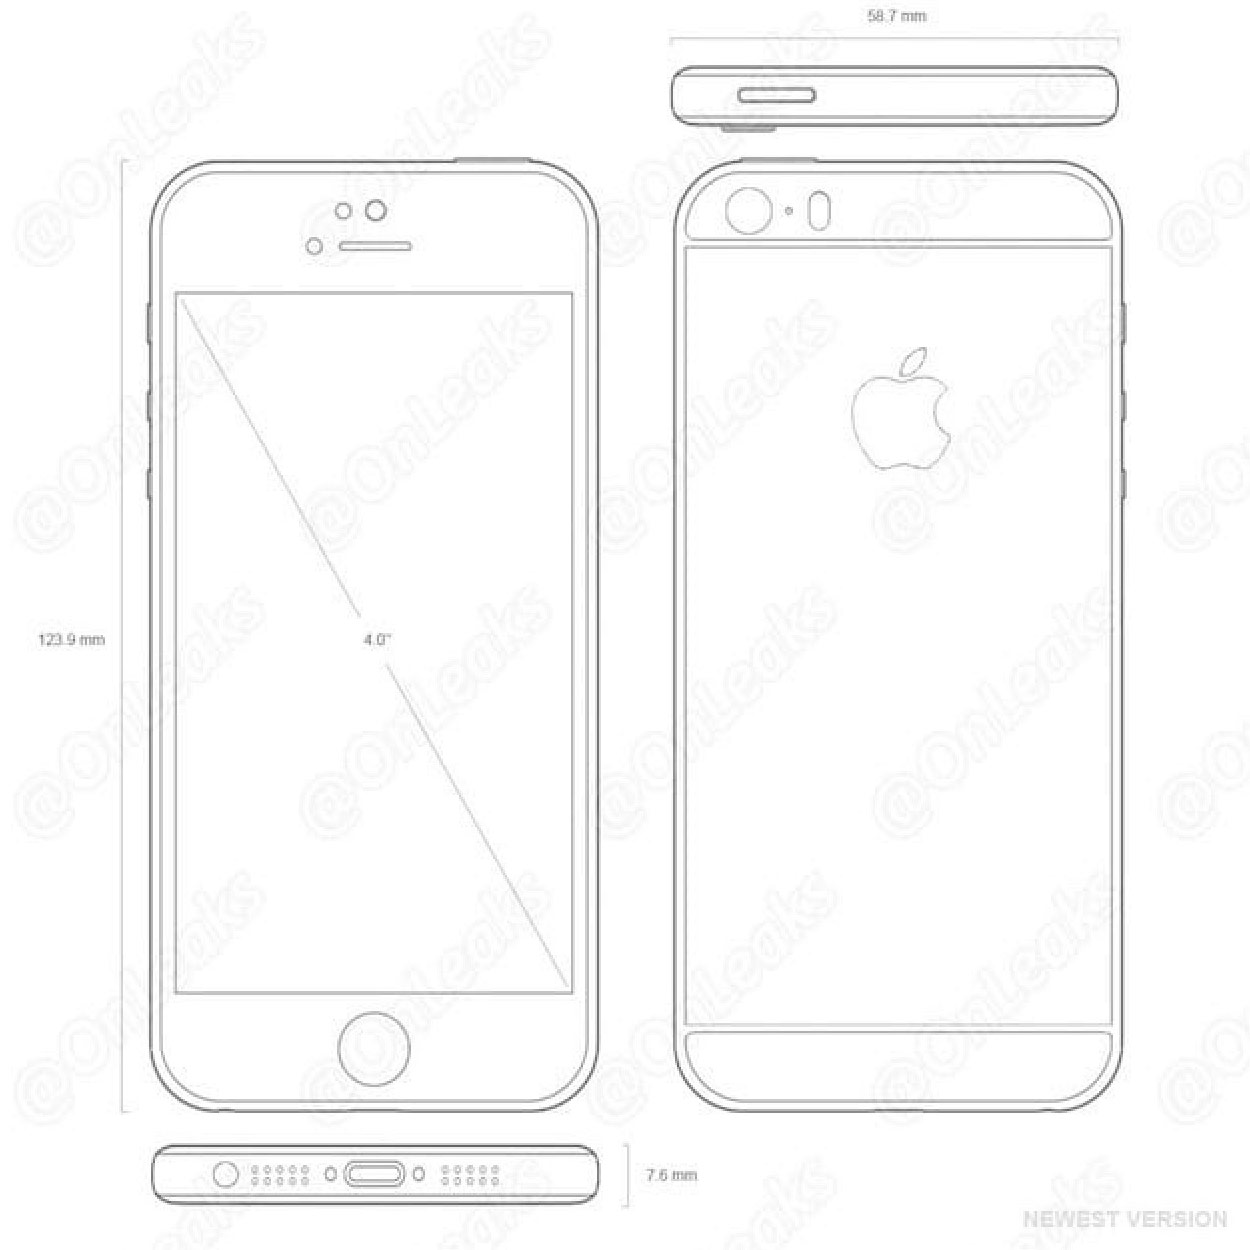 Опубликованы чертежи iPhone 5se: дизайн в стиле iPhone 5s, боковая кнопка питания, выступающая камера